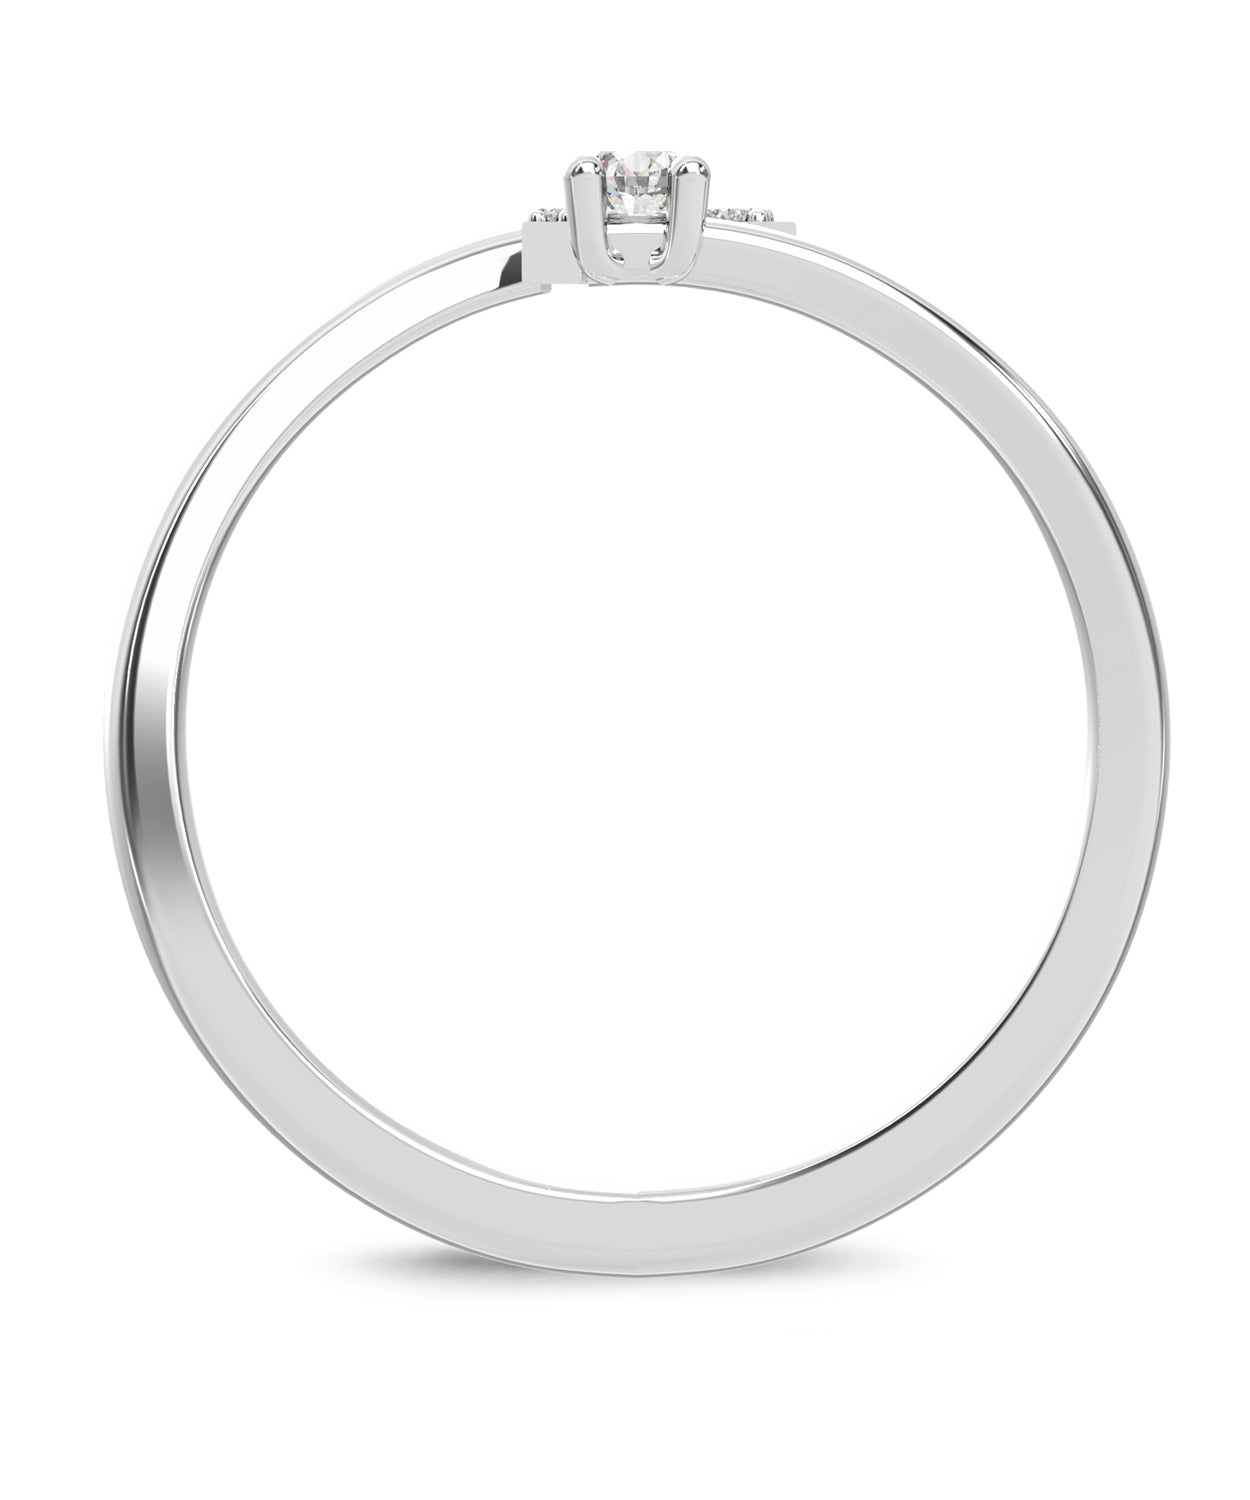 ESEMCO Diamond 18k White Gold Letter R Initial Open Ring View 2